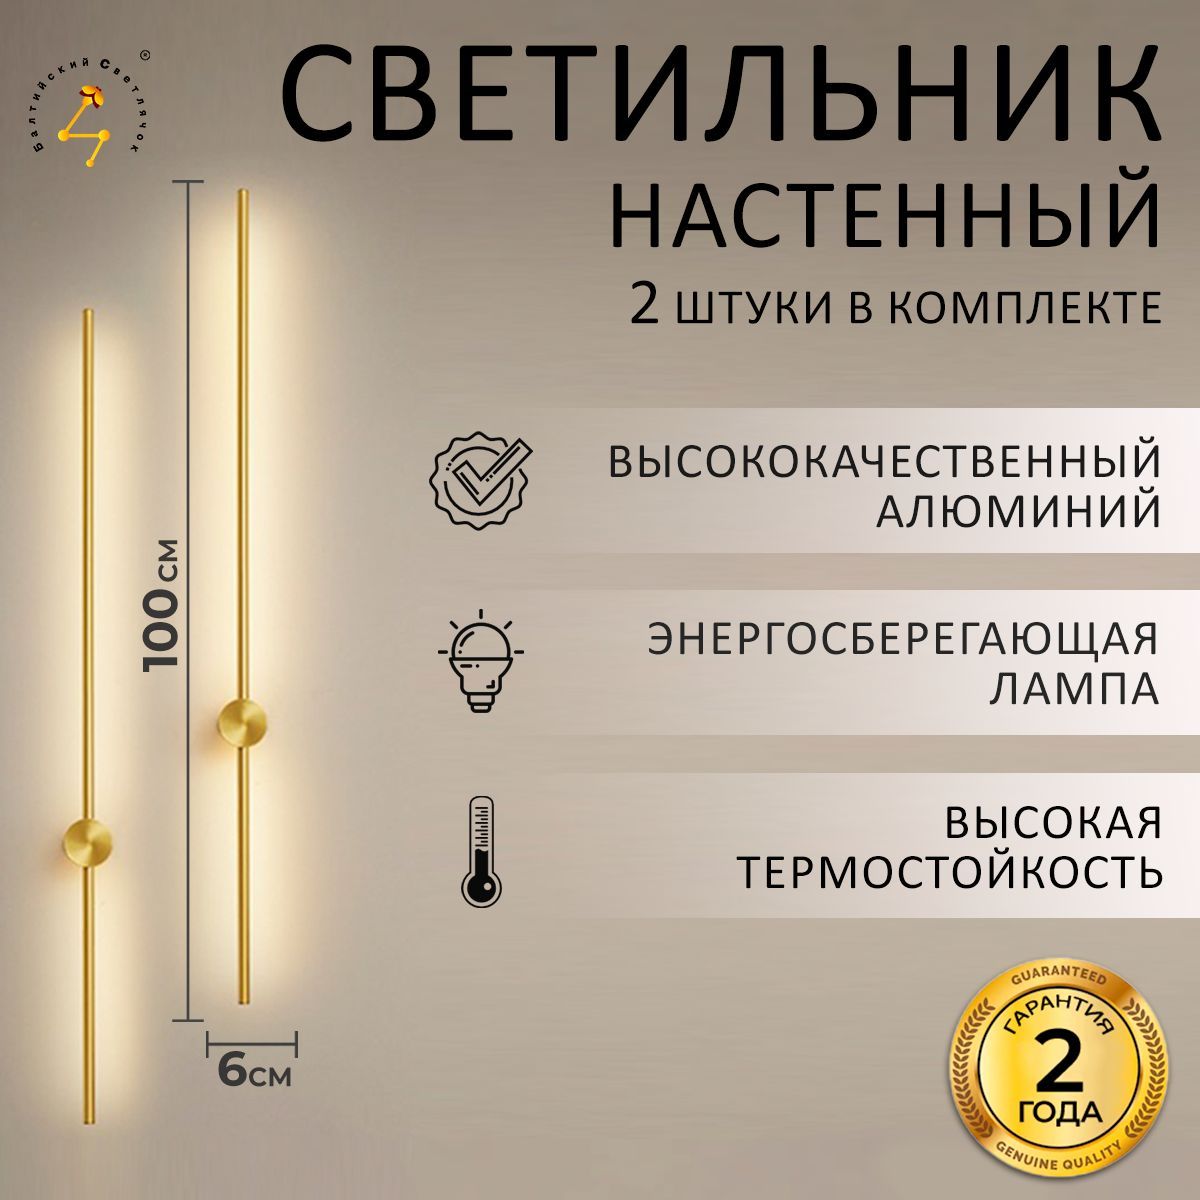 БалтийскийСветлячокНастенныйсветильникS40-120cm_2*золотой2-100см,LED